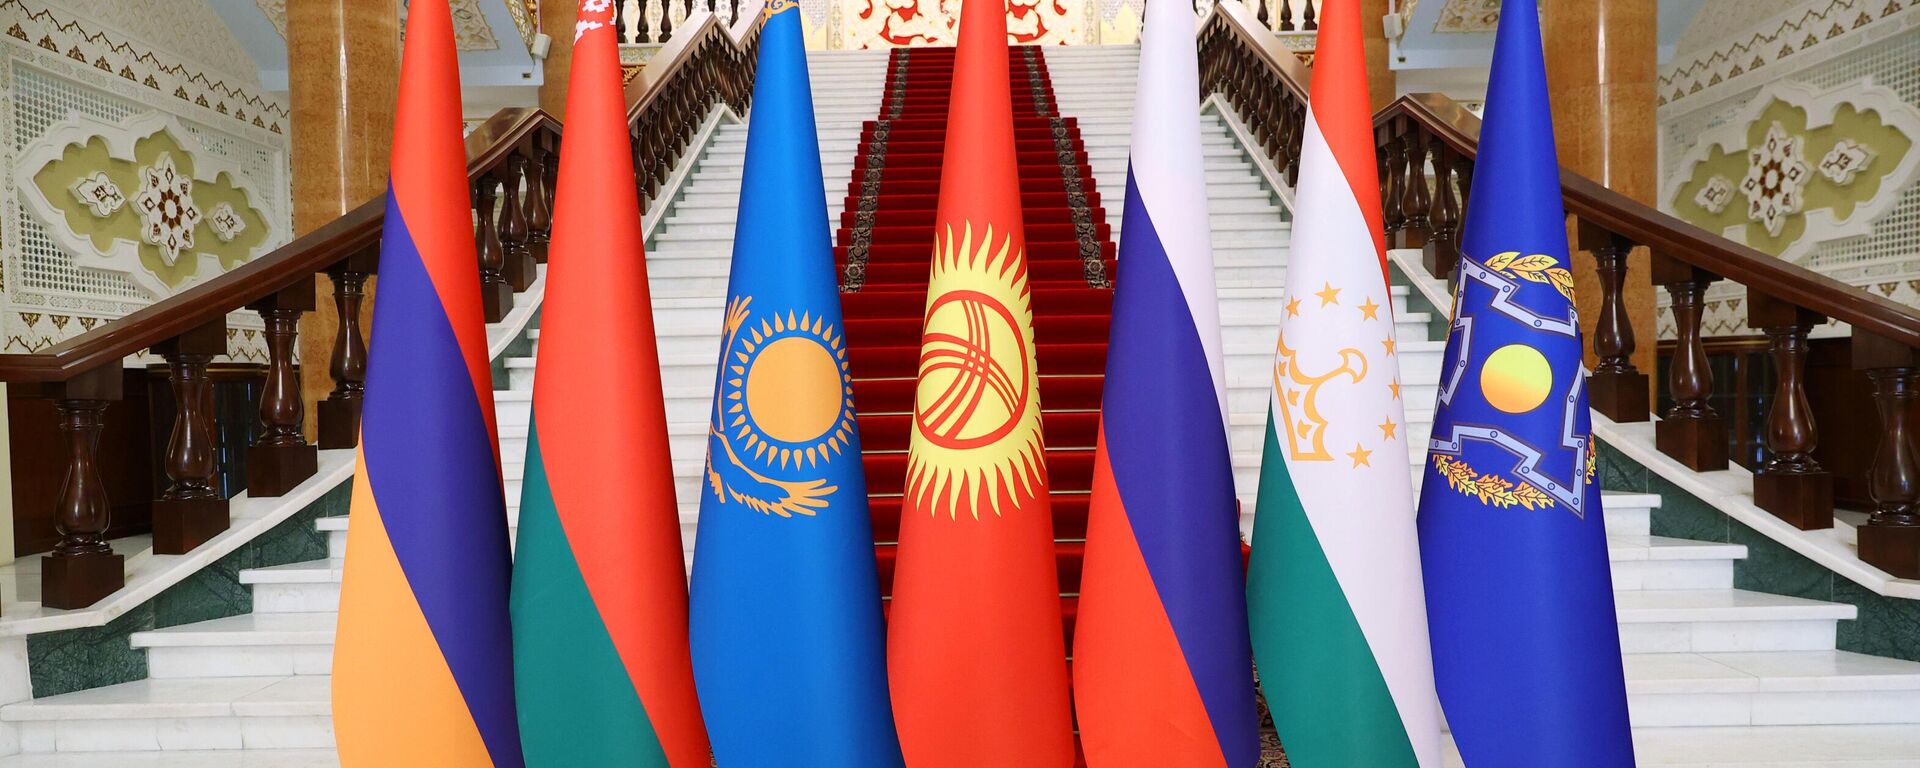 Заседание Совета коллективной безопасности ОДКБ - Sputnik Узбекистан, 1920, 20.09.2021